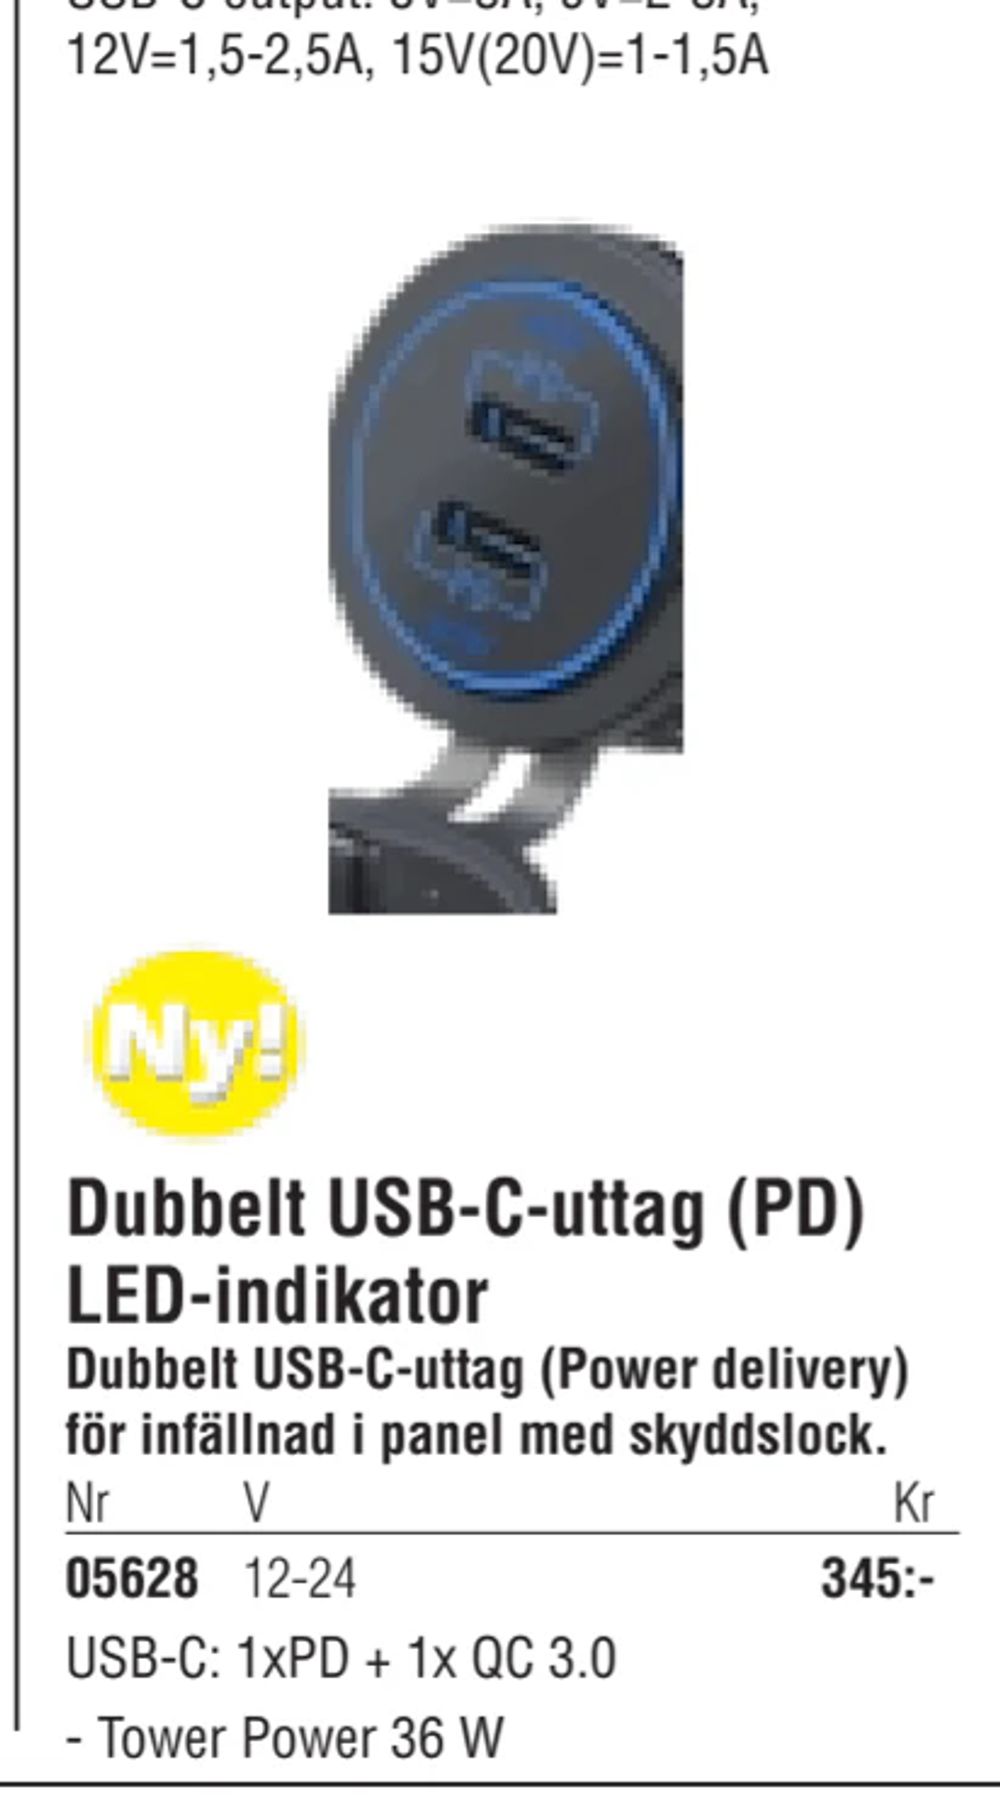 Erbjudanden på Dubbelt USB-C-uttag (PD) LED-indikator från Erlandsons Brygga för 345 kr